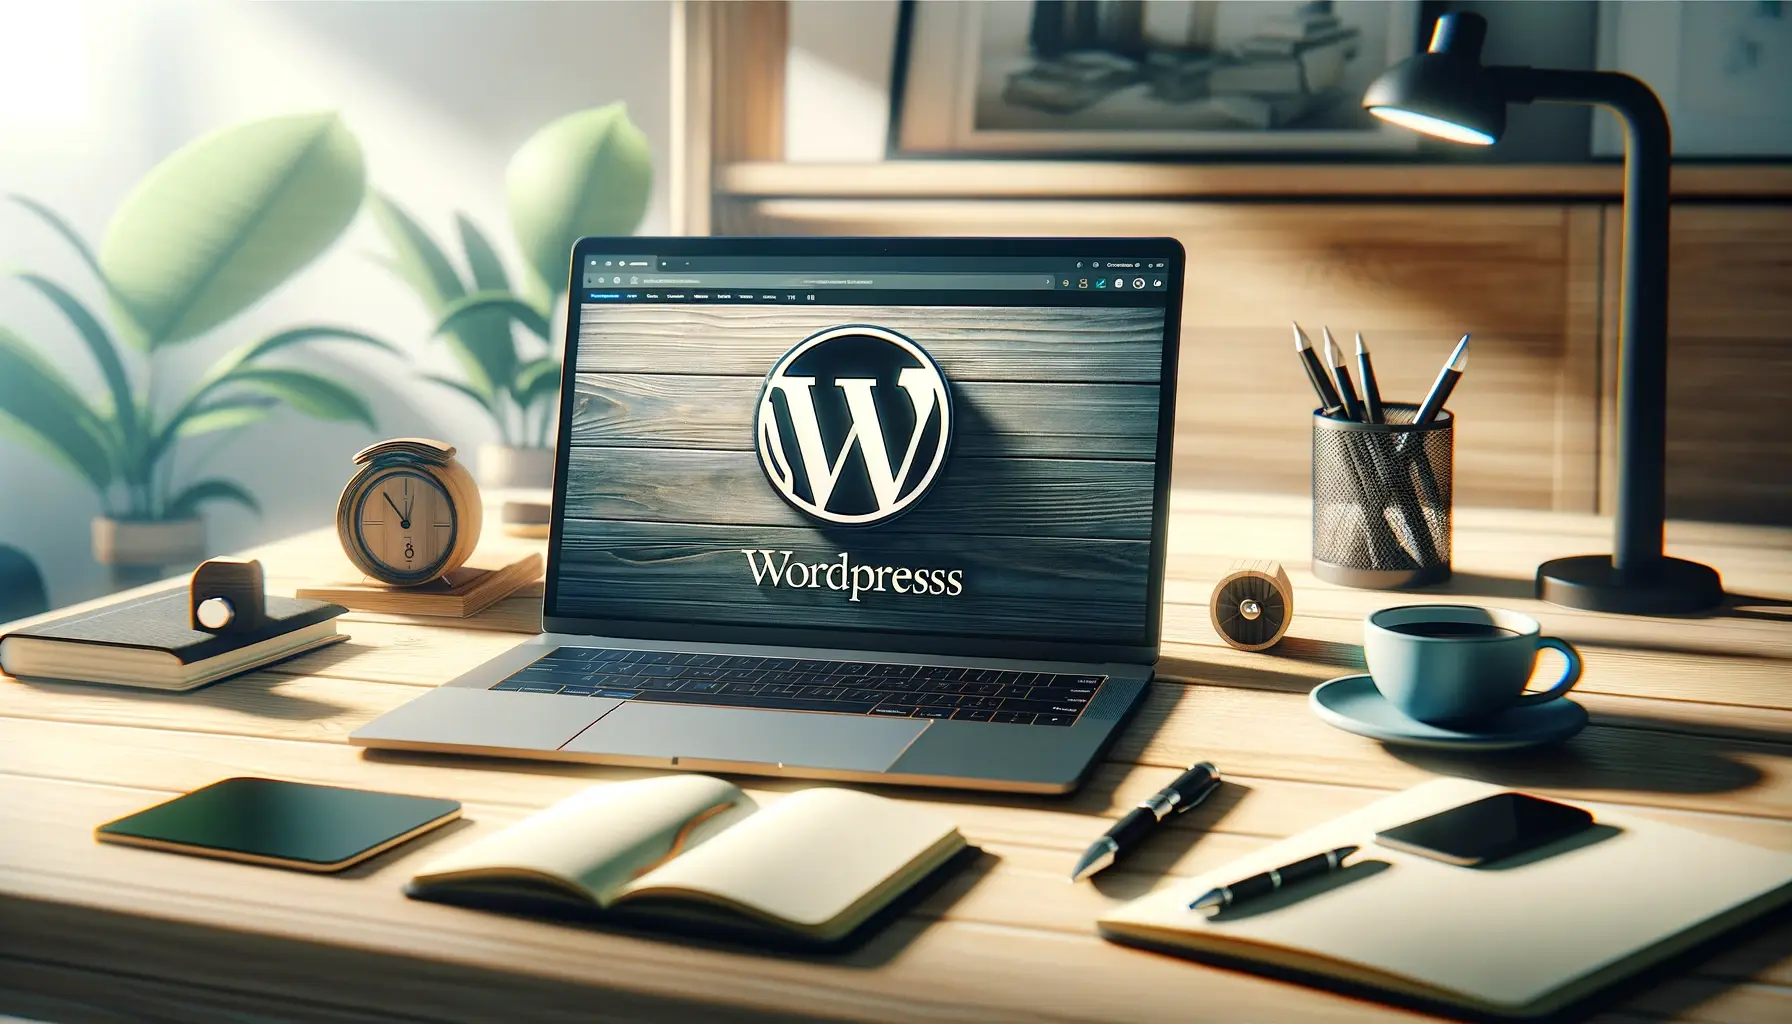 En dator som har WordPress-logotypen som bakgrundsbild